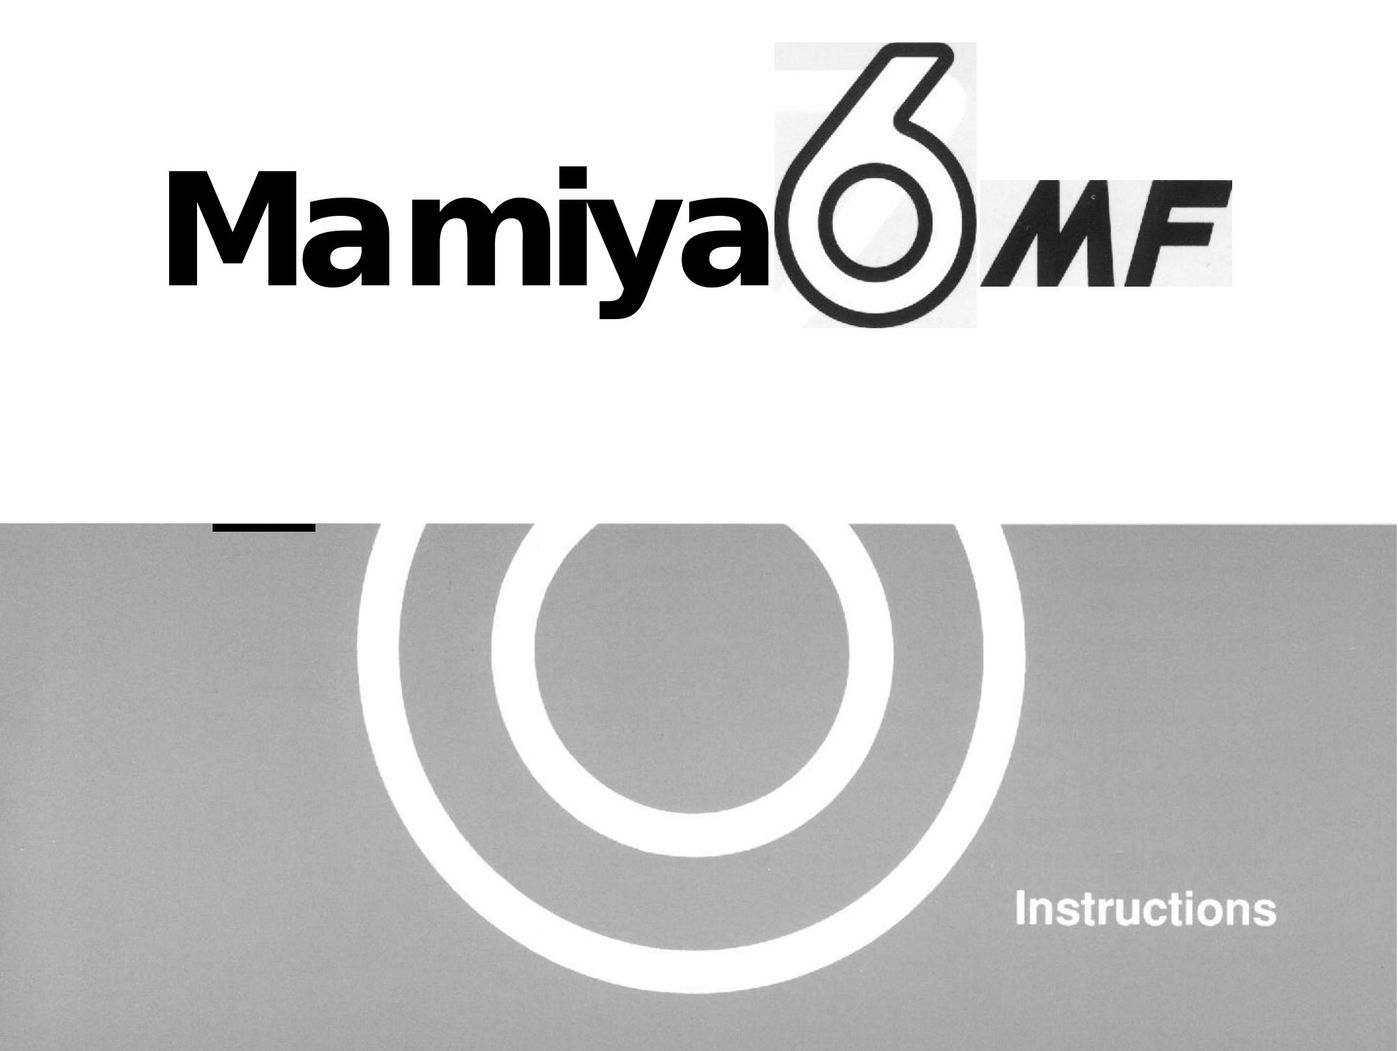 Mamiya 6MF Power Supply User Manual